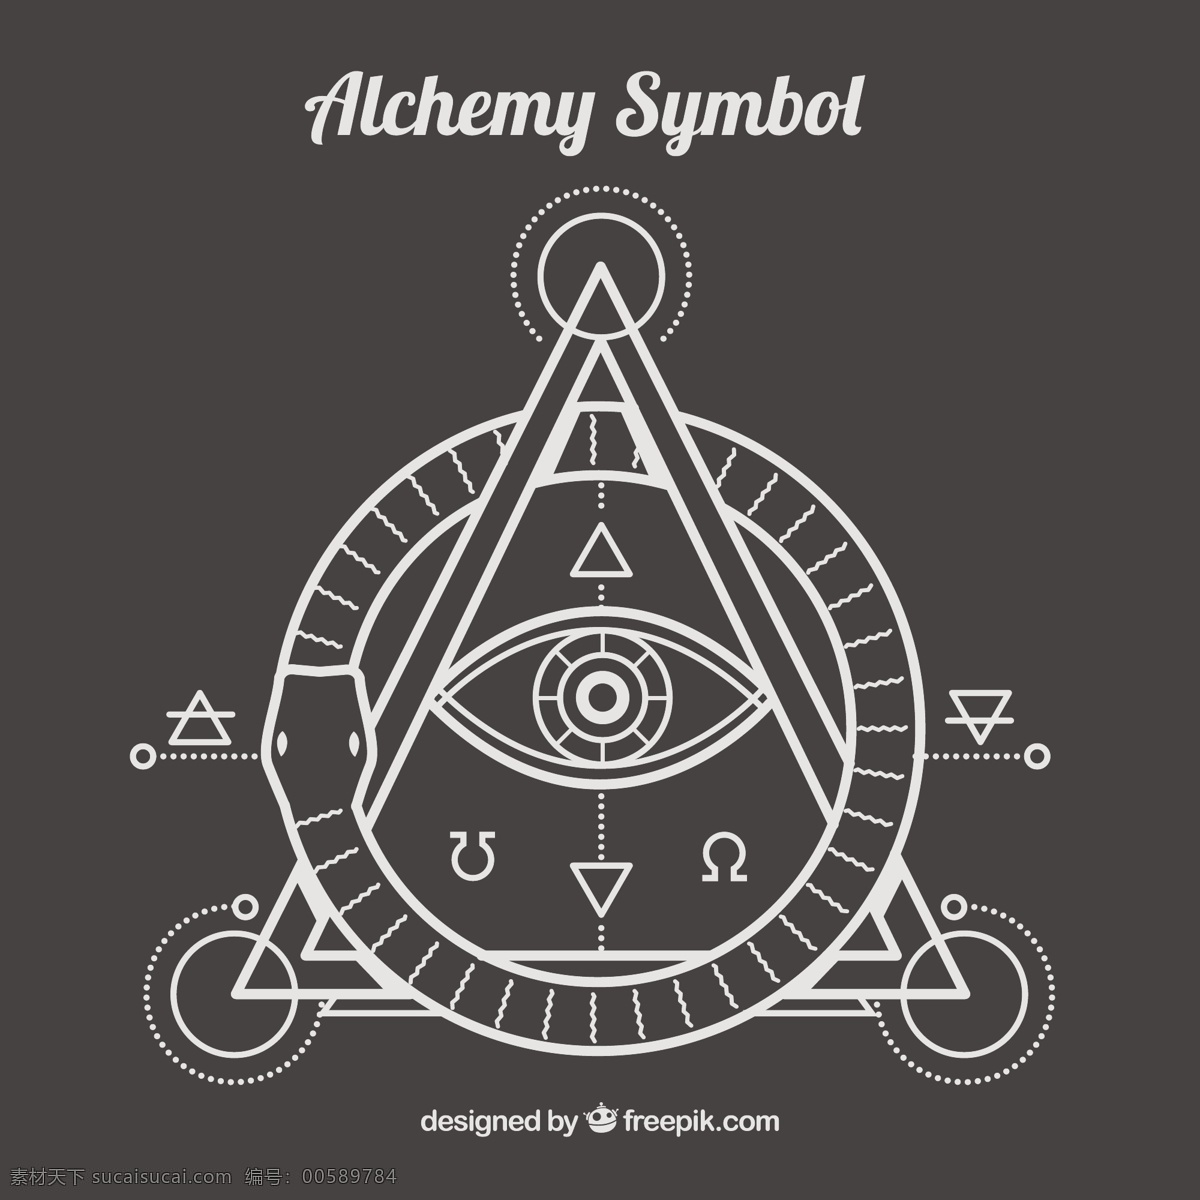 在线 性 风格 alhemy 符号 抽象 装饰 几何 三角 线条 眼睛 形状 化学 抽象线条 未来 元素 几何造型 灰色